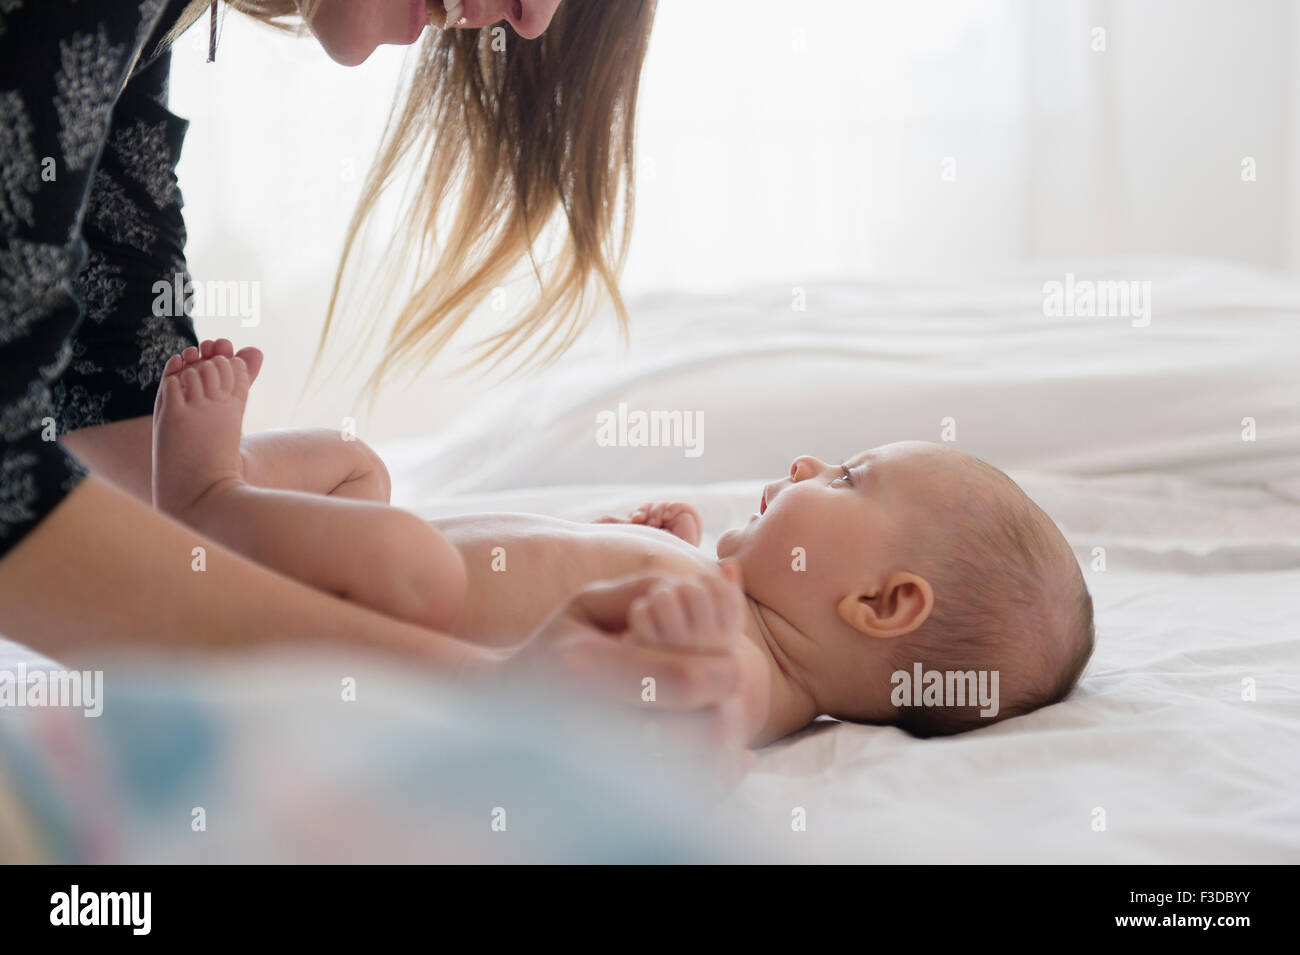 Madre jugando con la niña (2-5 meses) en la cama Foto de stock